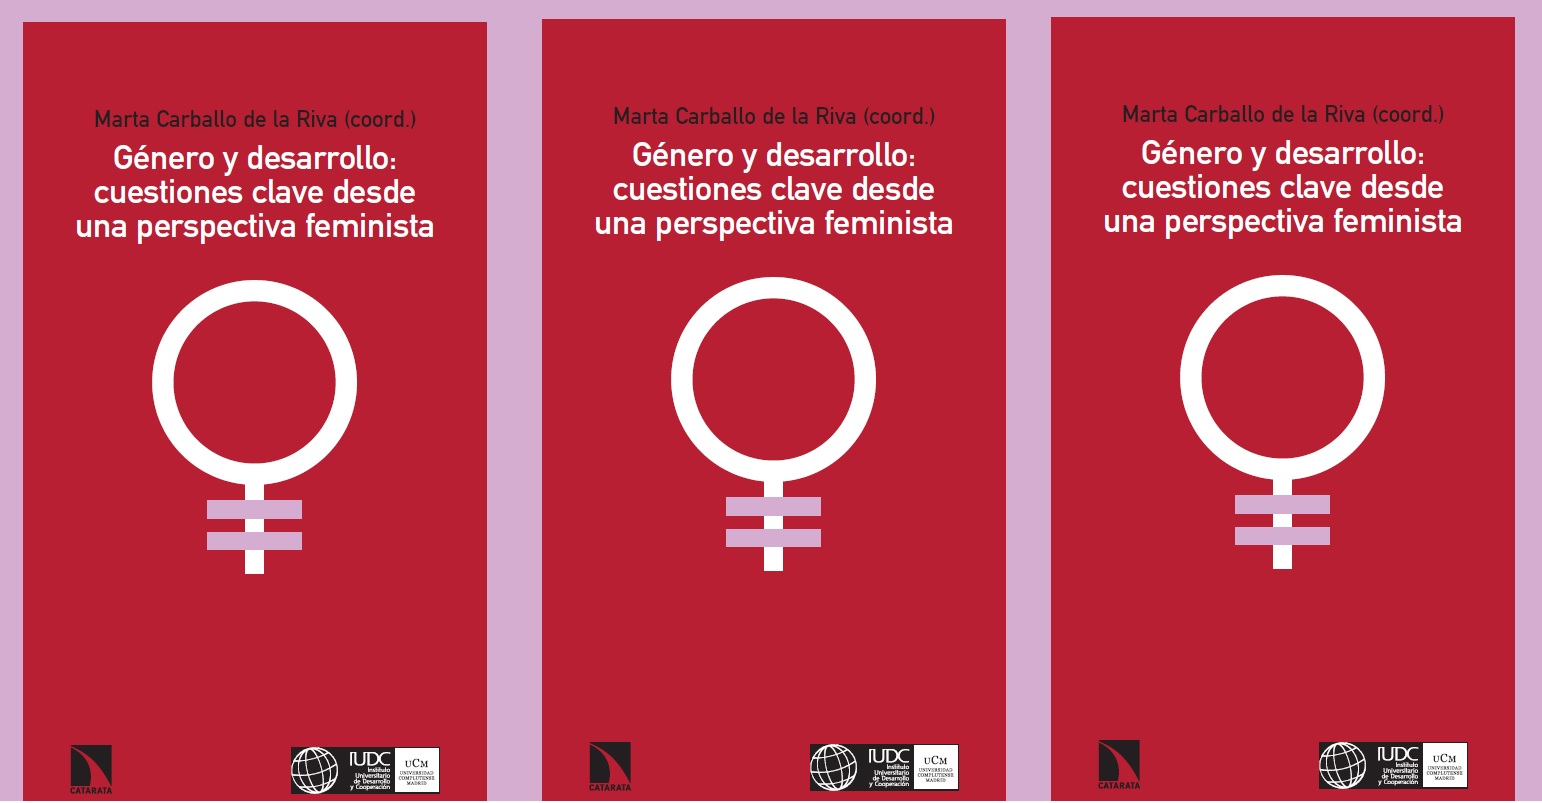 Nueva publicación: “Género y desarrollo: cuestiones claves desde una perspectiva feminista”